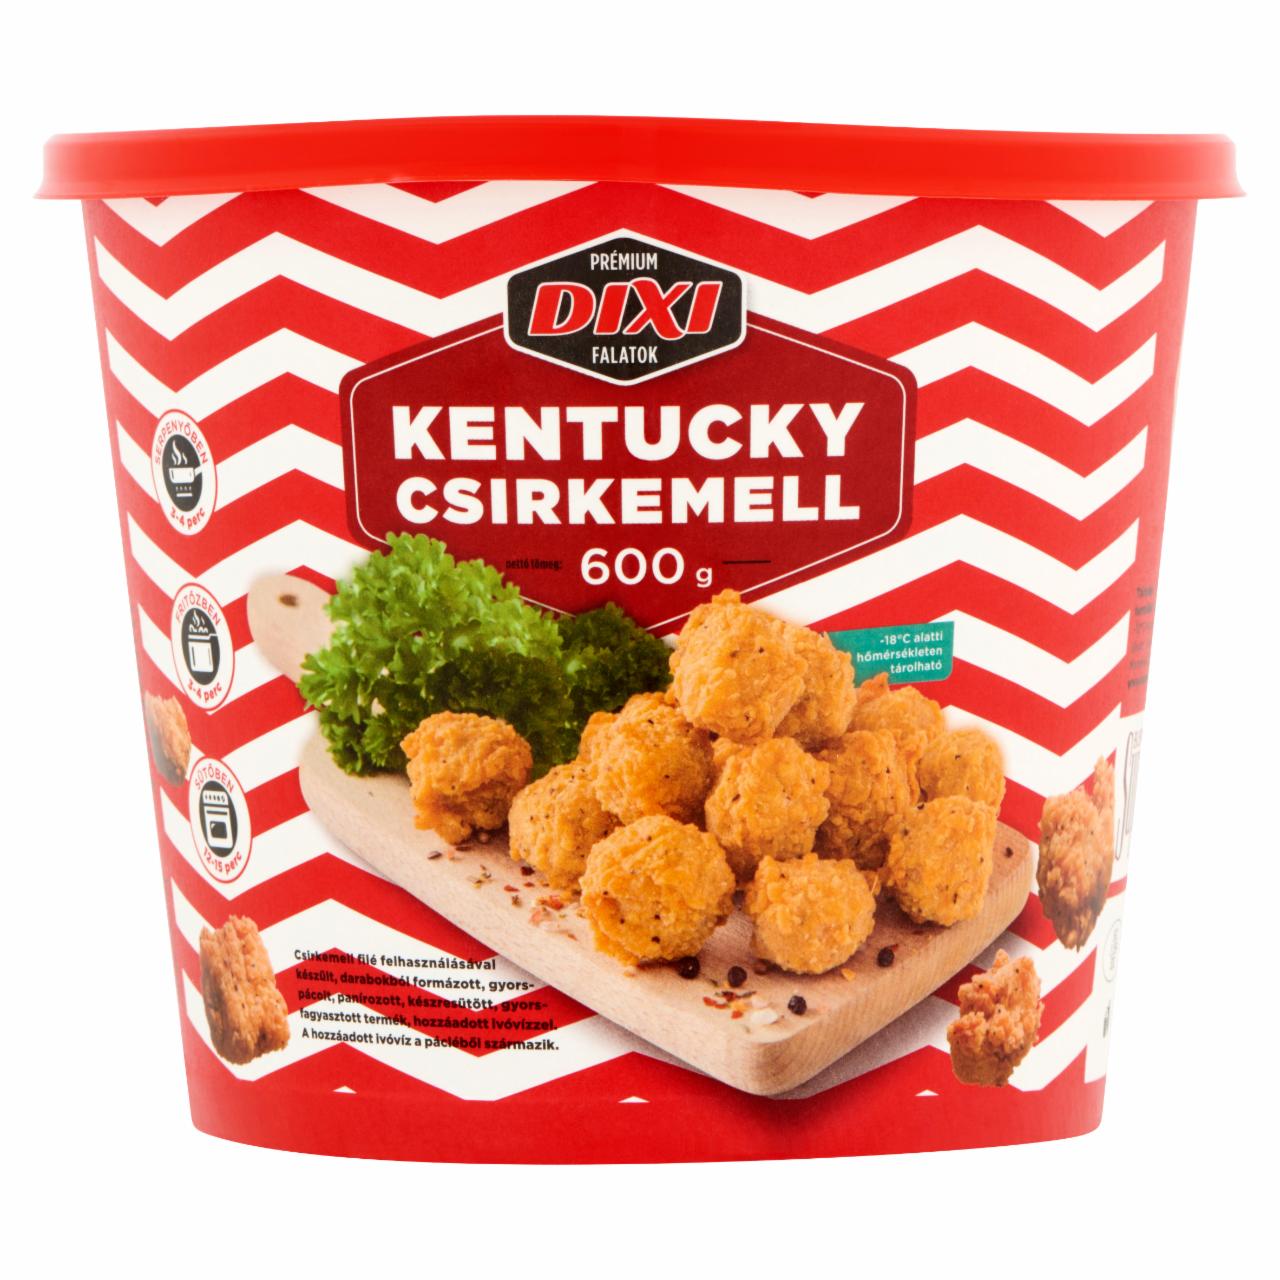 Képek - Dixi Prémium Falatok gyorsfagyasztott Kentucky csirkemell 600 g